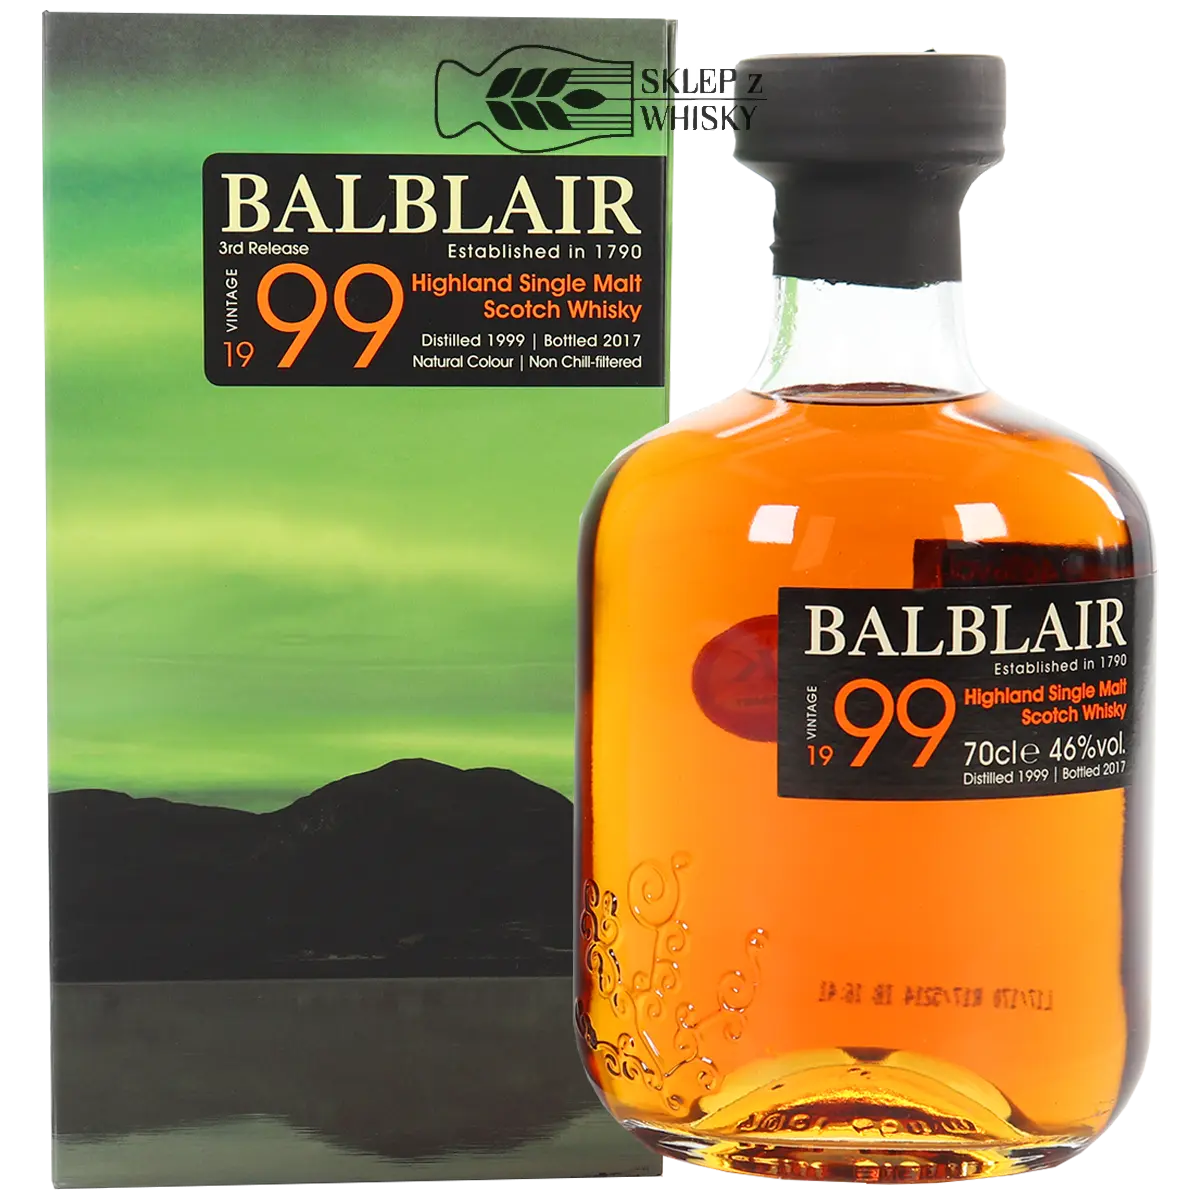 Balblair 1999 - szkocka whisky single malt z regionu Highlands, 700 ml, w pudełku